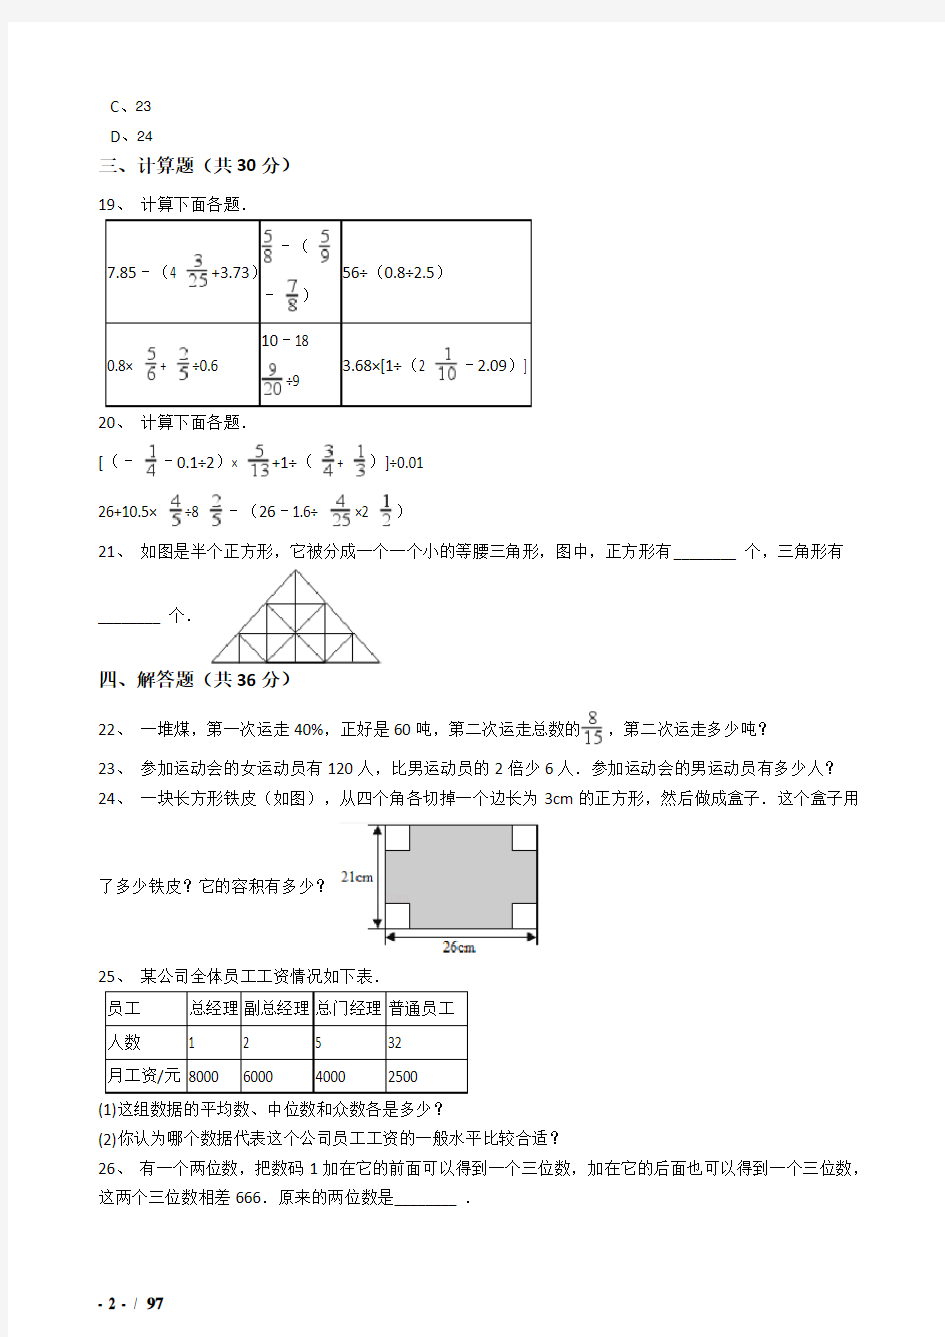 2018年南京市小升初数学模拟试题(共8套)详细答案